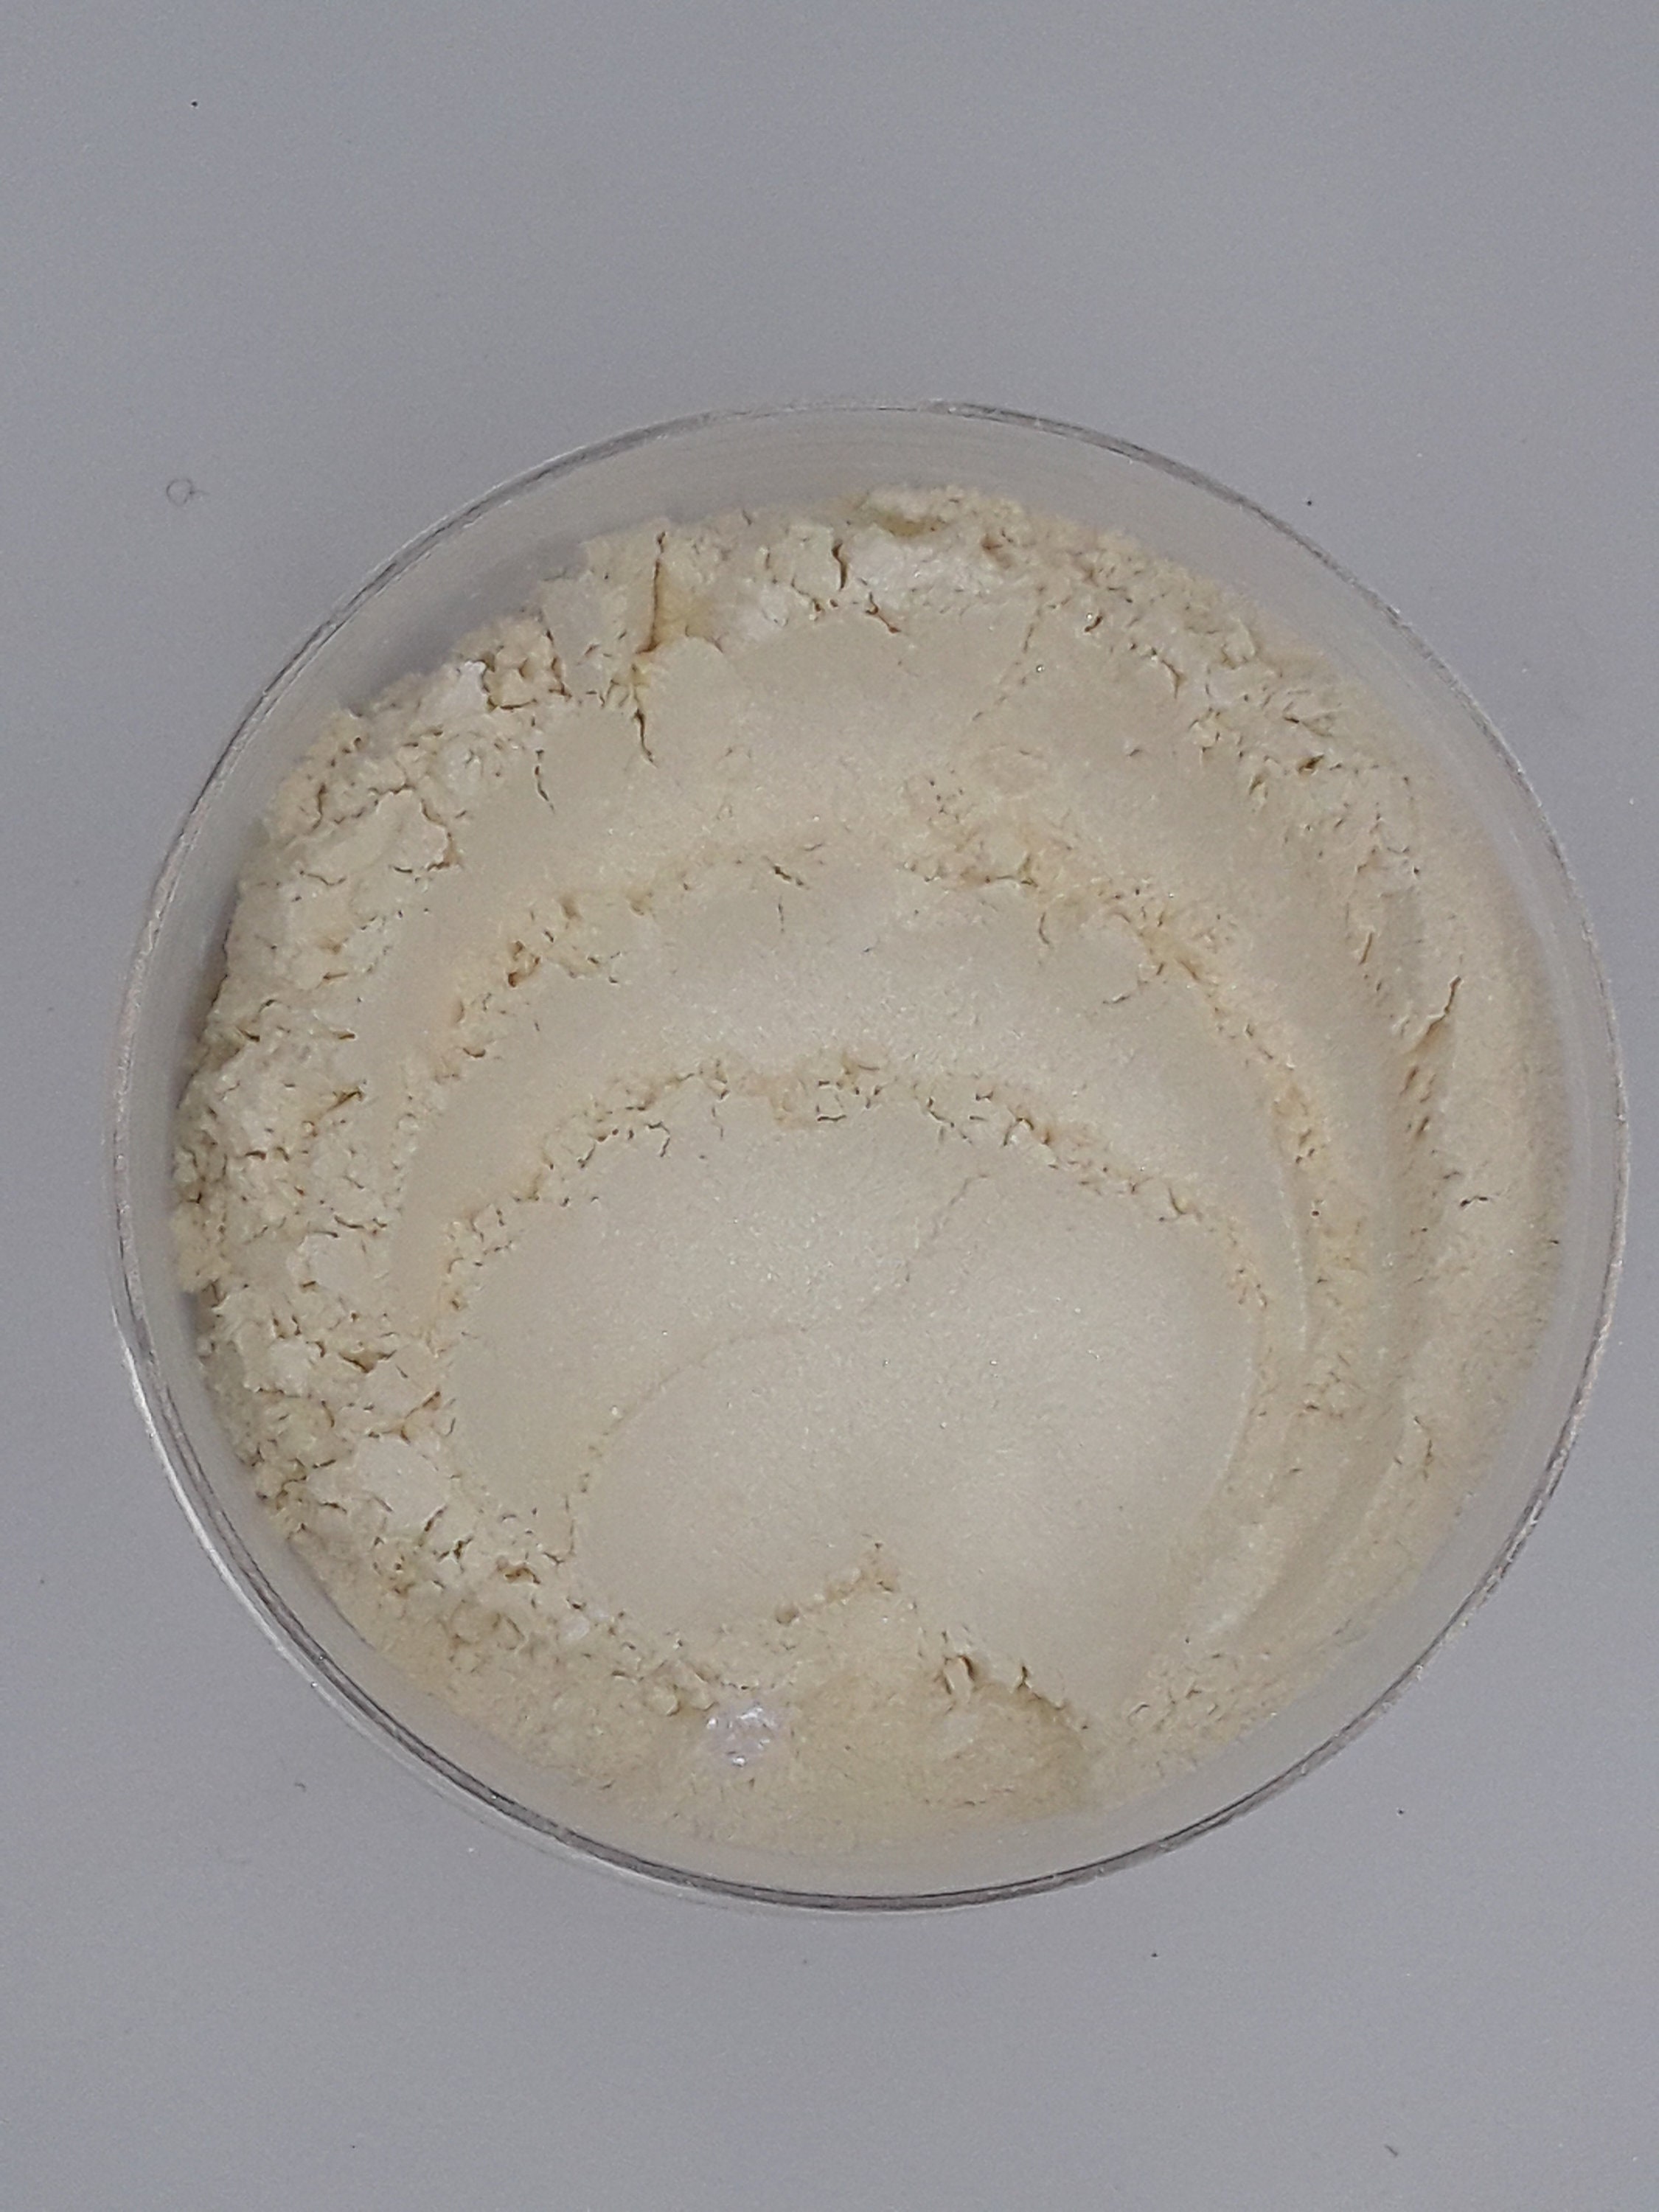 Yellow Pearlescent Mica Powder 5g. KOLORTEK Cosmetic Grade 